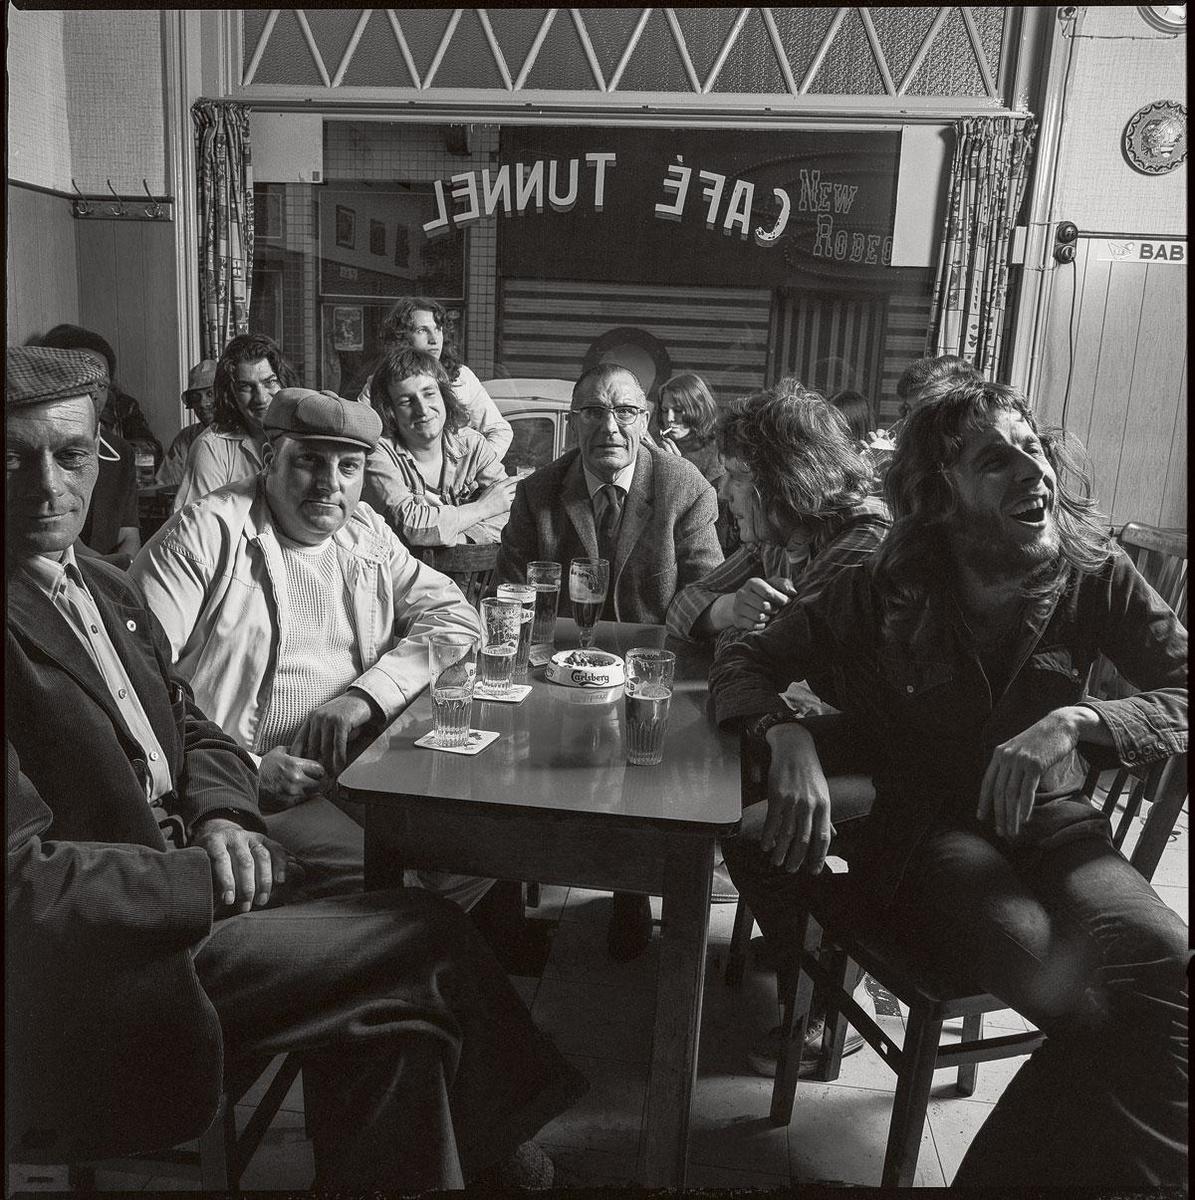 De eerste fotosessie in 1972 (met rechts vooraan Arno en achter hem Paul Couter) Paul Couter: '